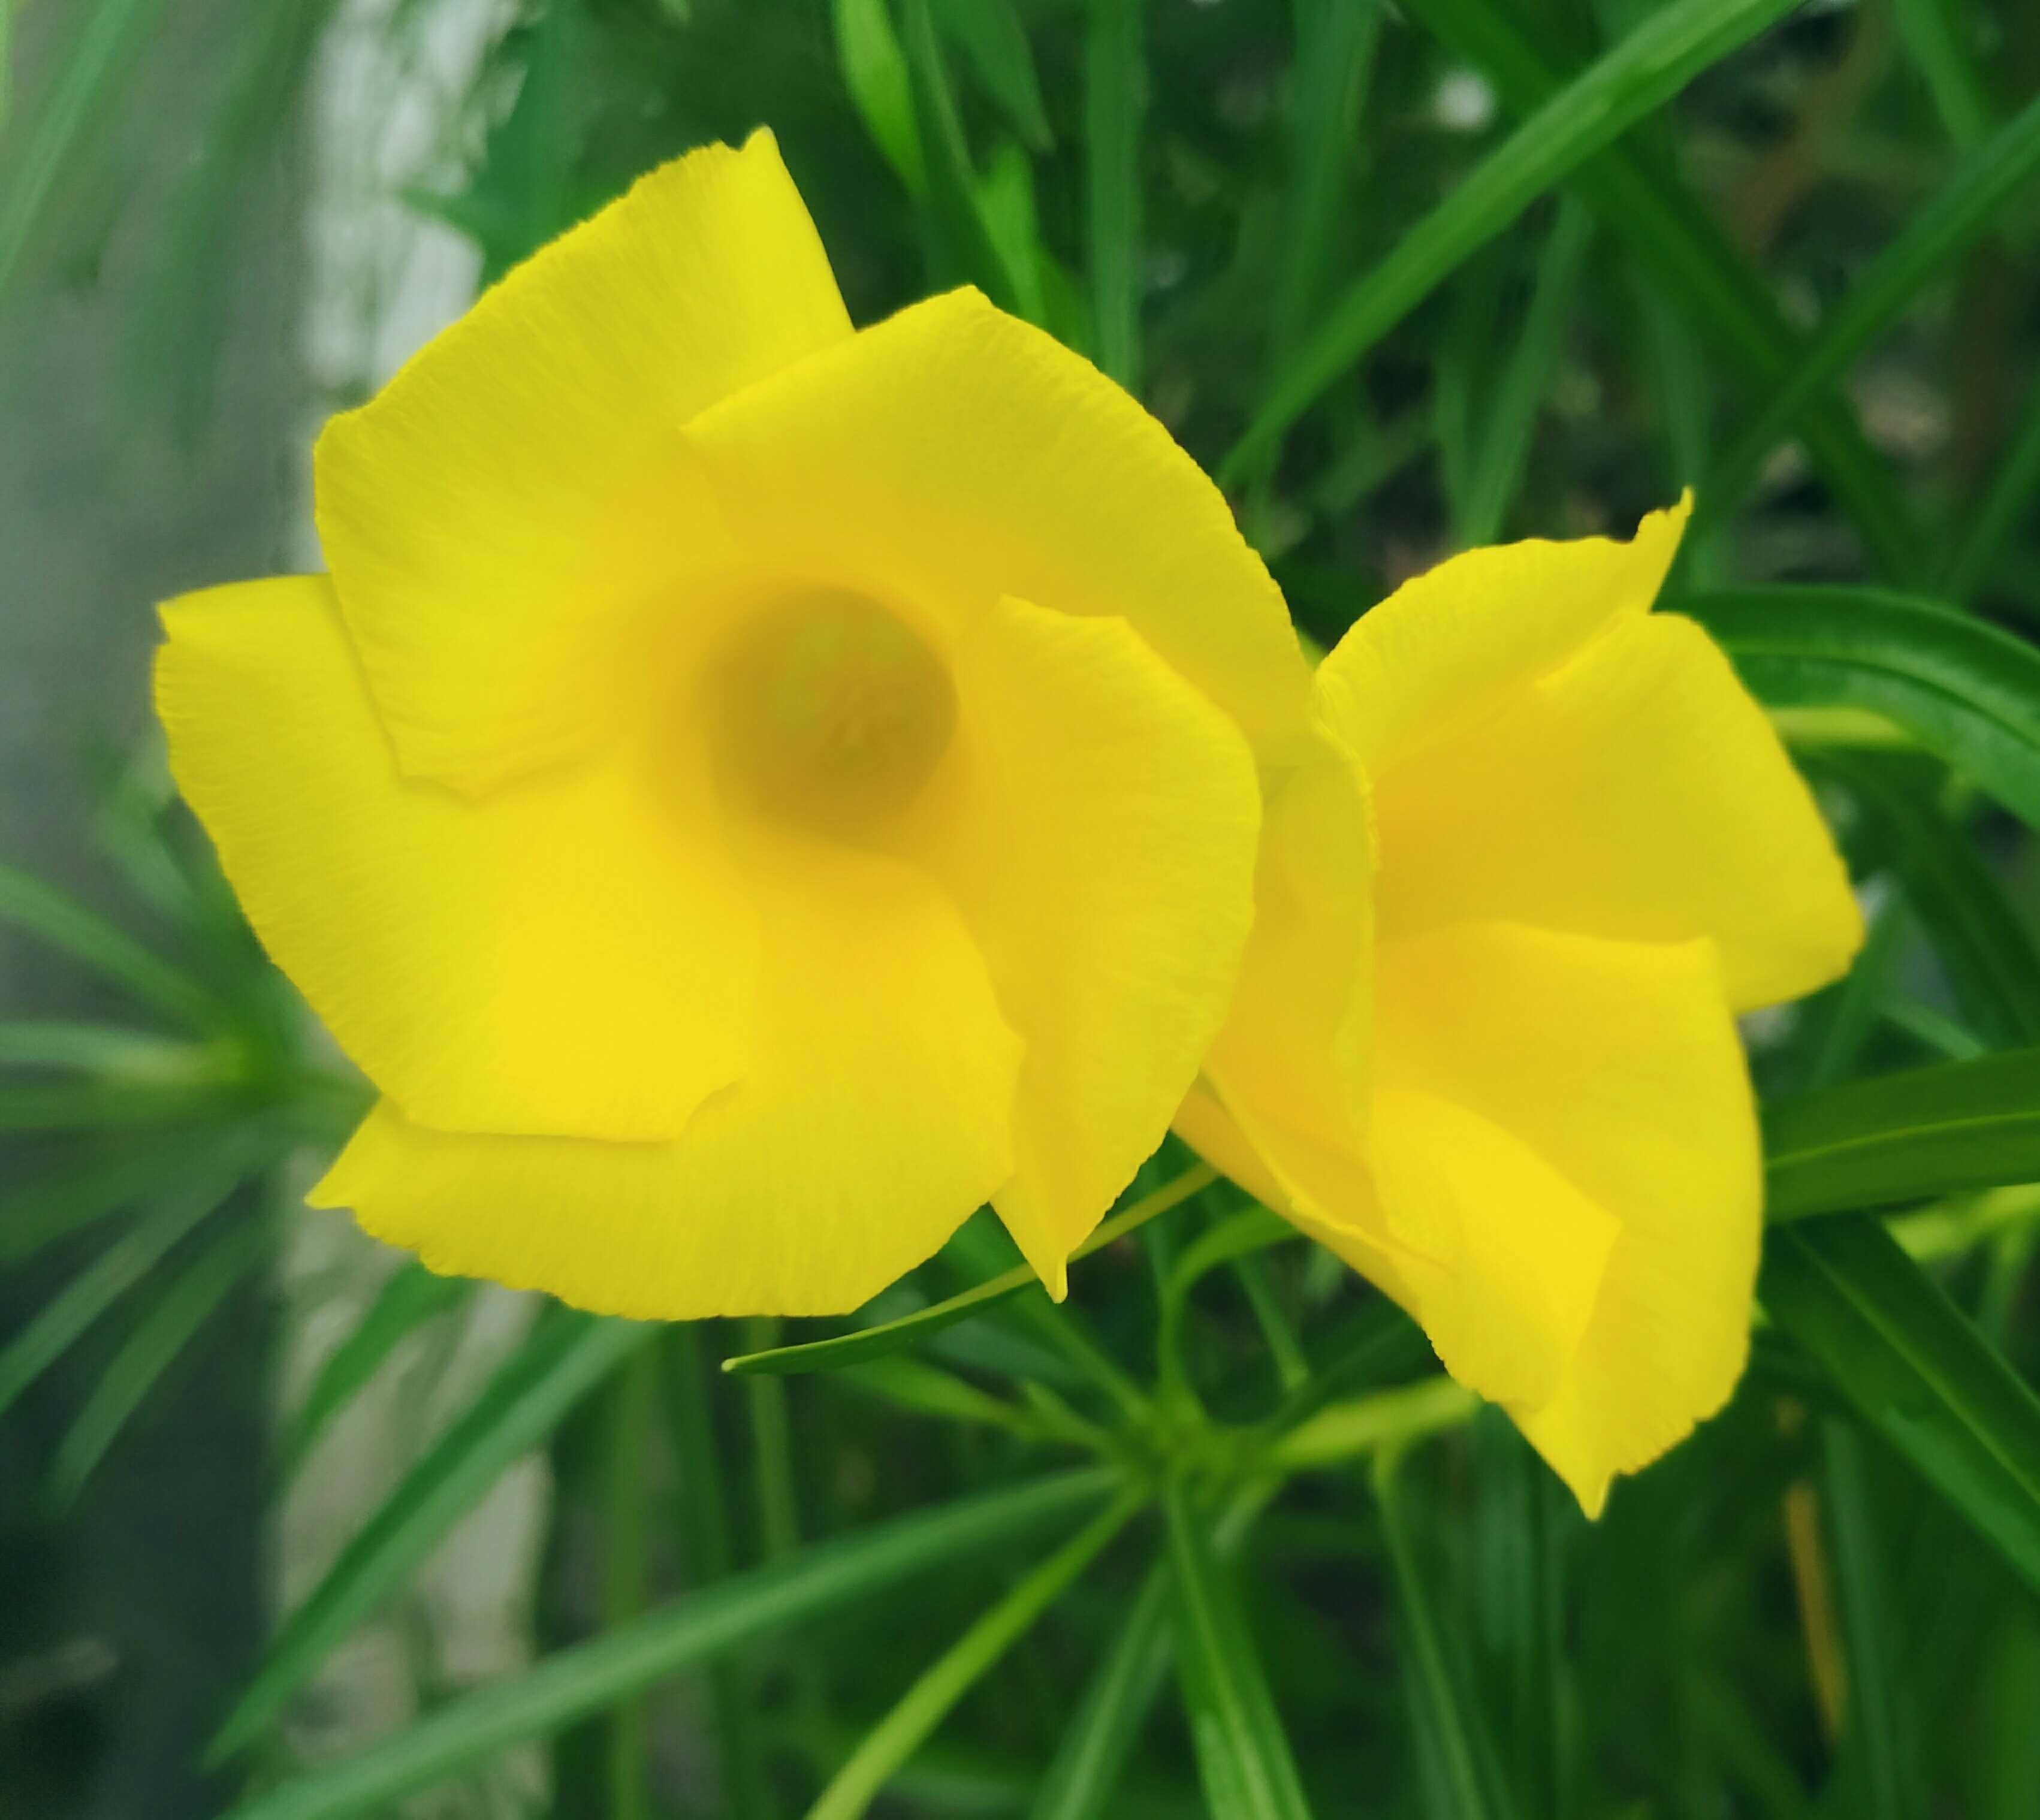 Gambar Bunga Berwarna Kuning Gambar Ngetrend dan VIRAL